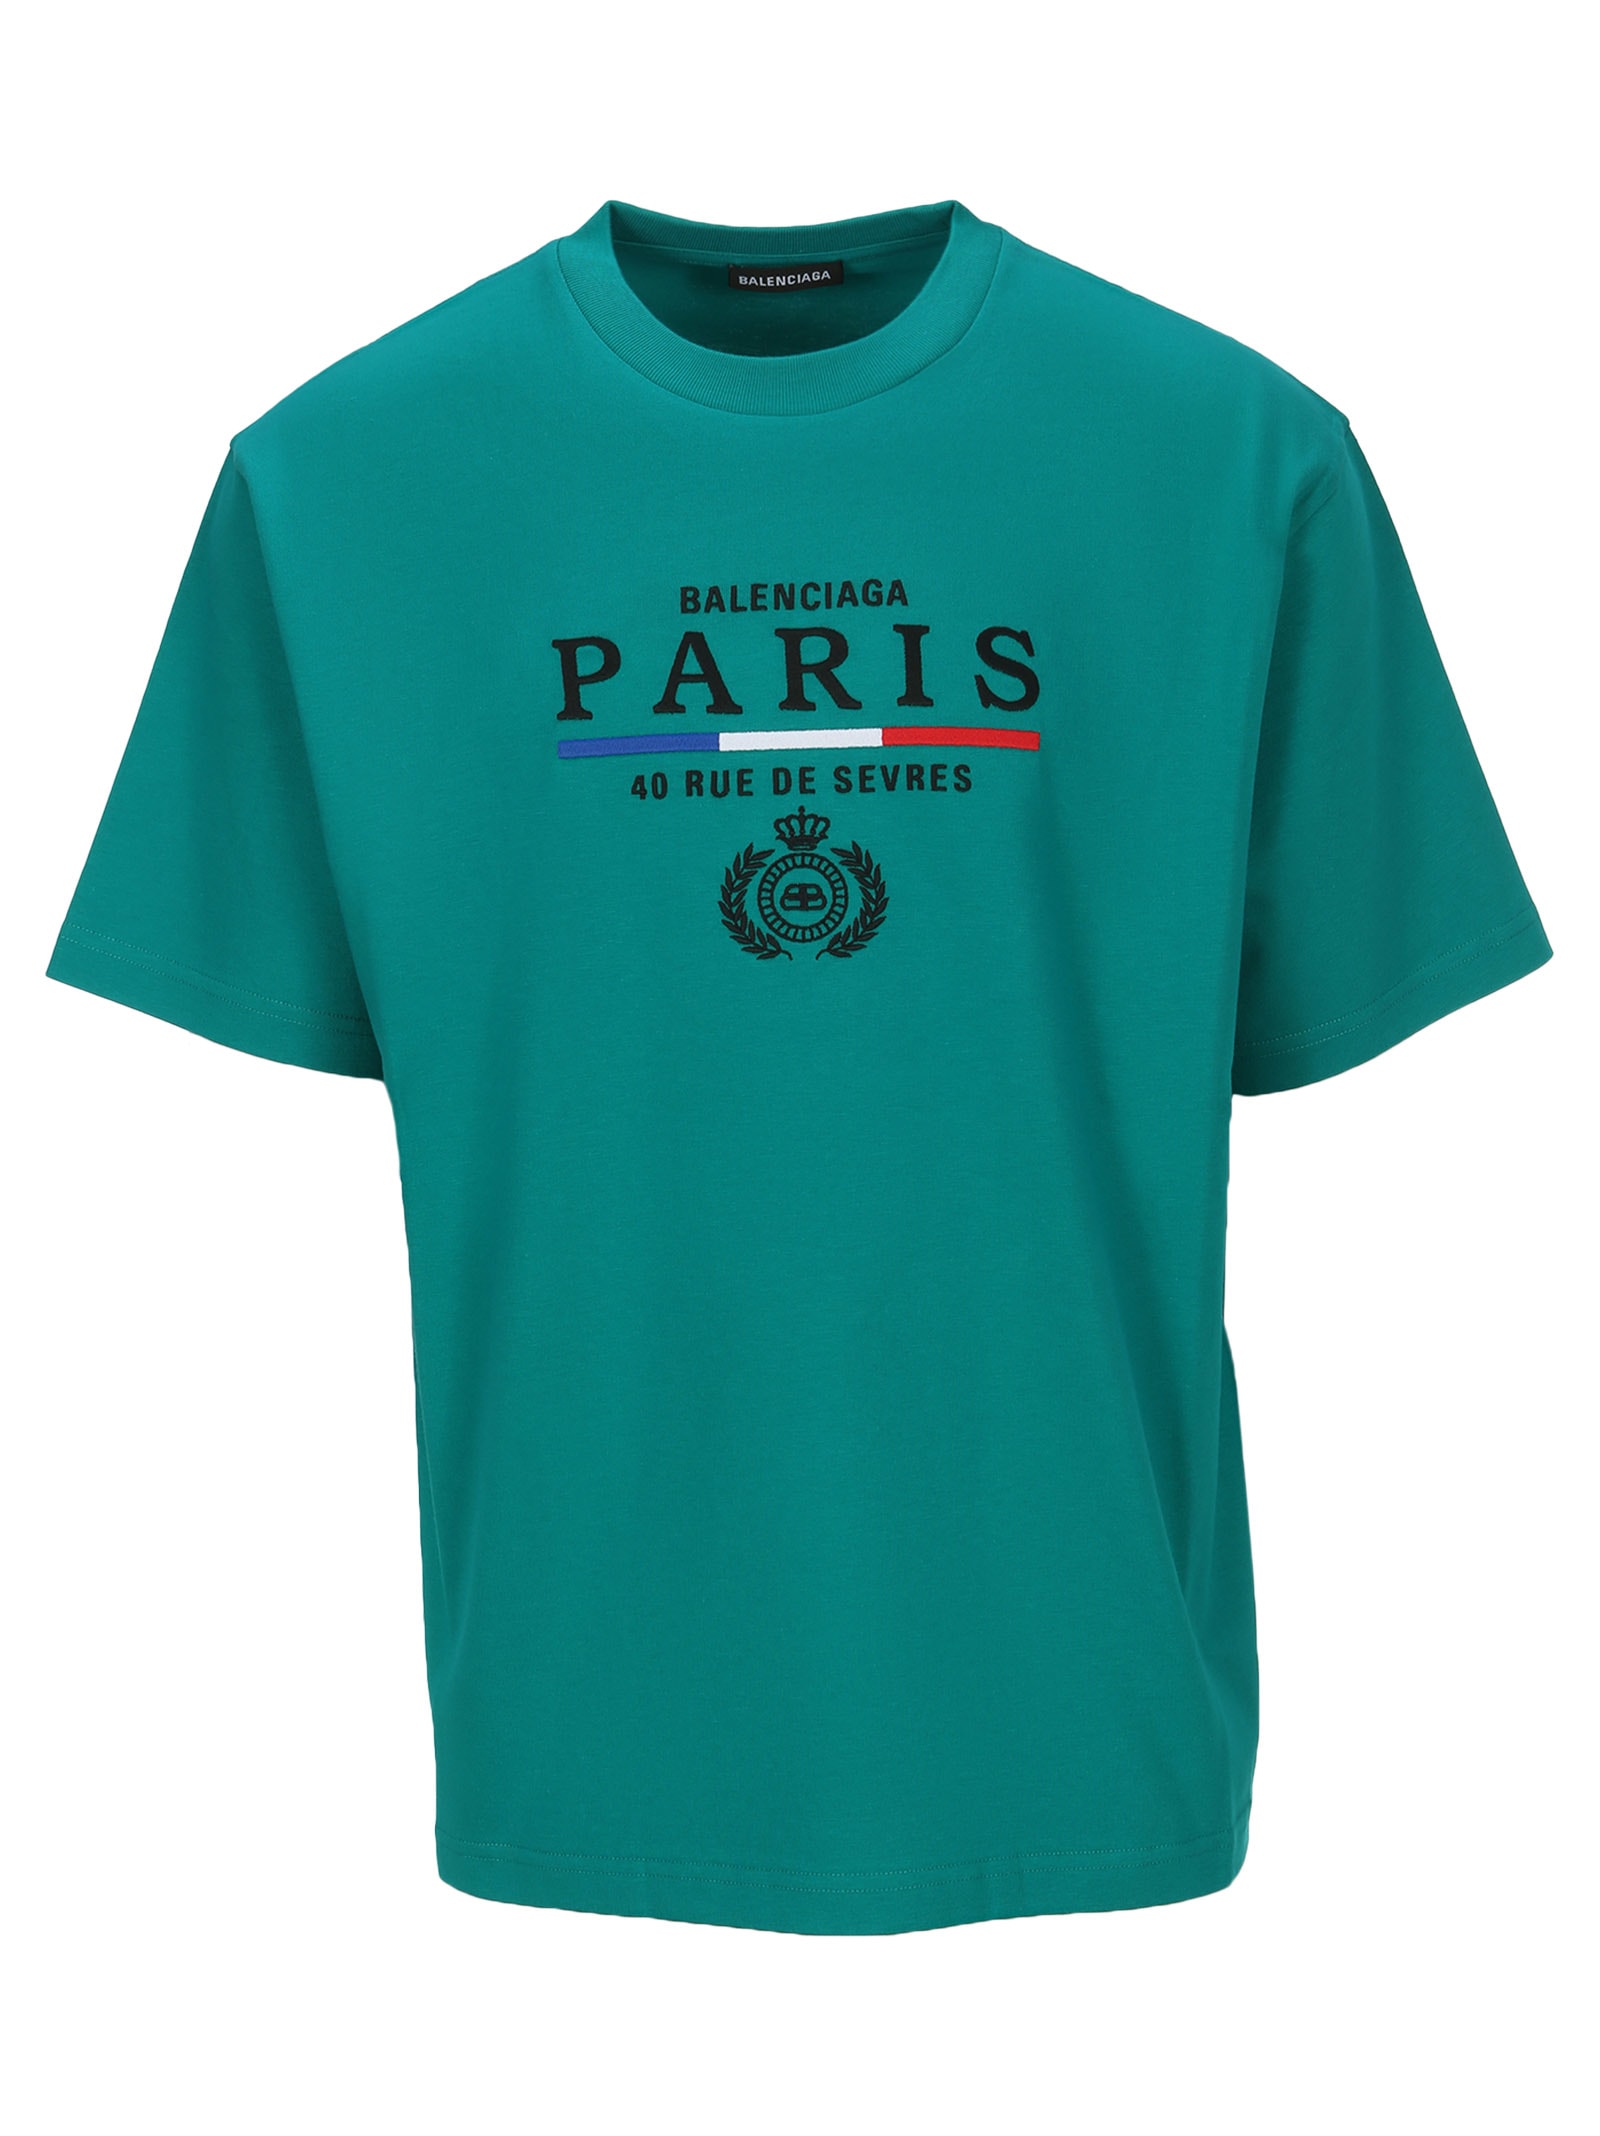  Balenciaga  Balenciaga  Paris T  shirt  EMERALD GREEN 